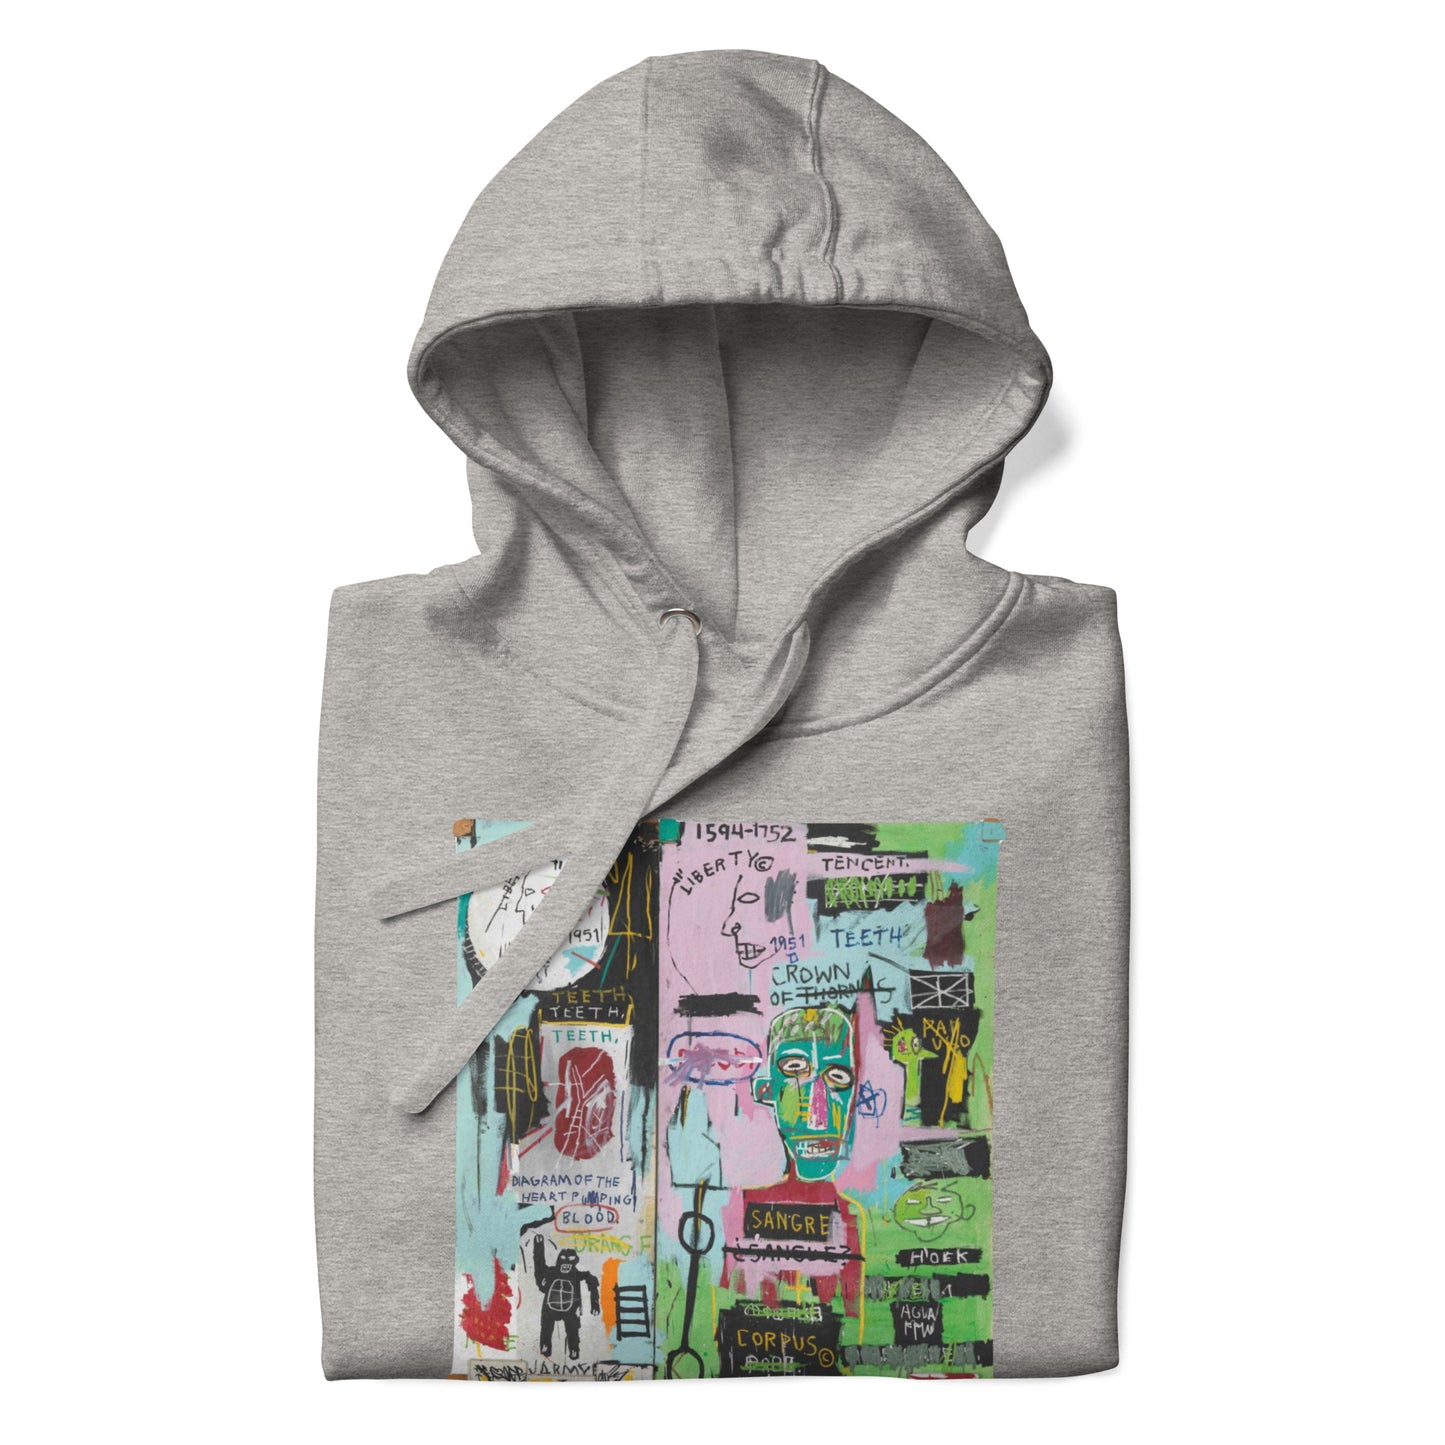 Jean-Michel Basquiat "In Italian" Artwork Printed Premium Streetwear Sweatshirt Hoodie Grey